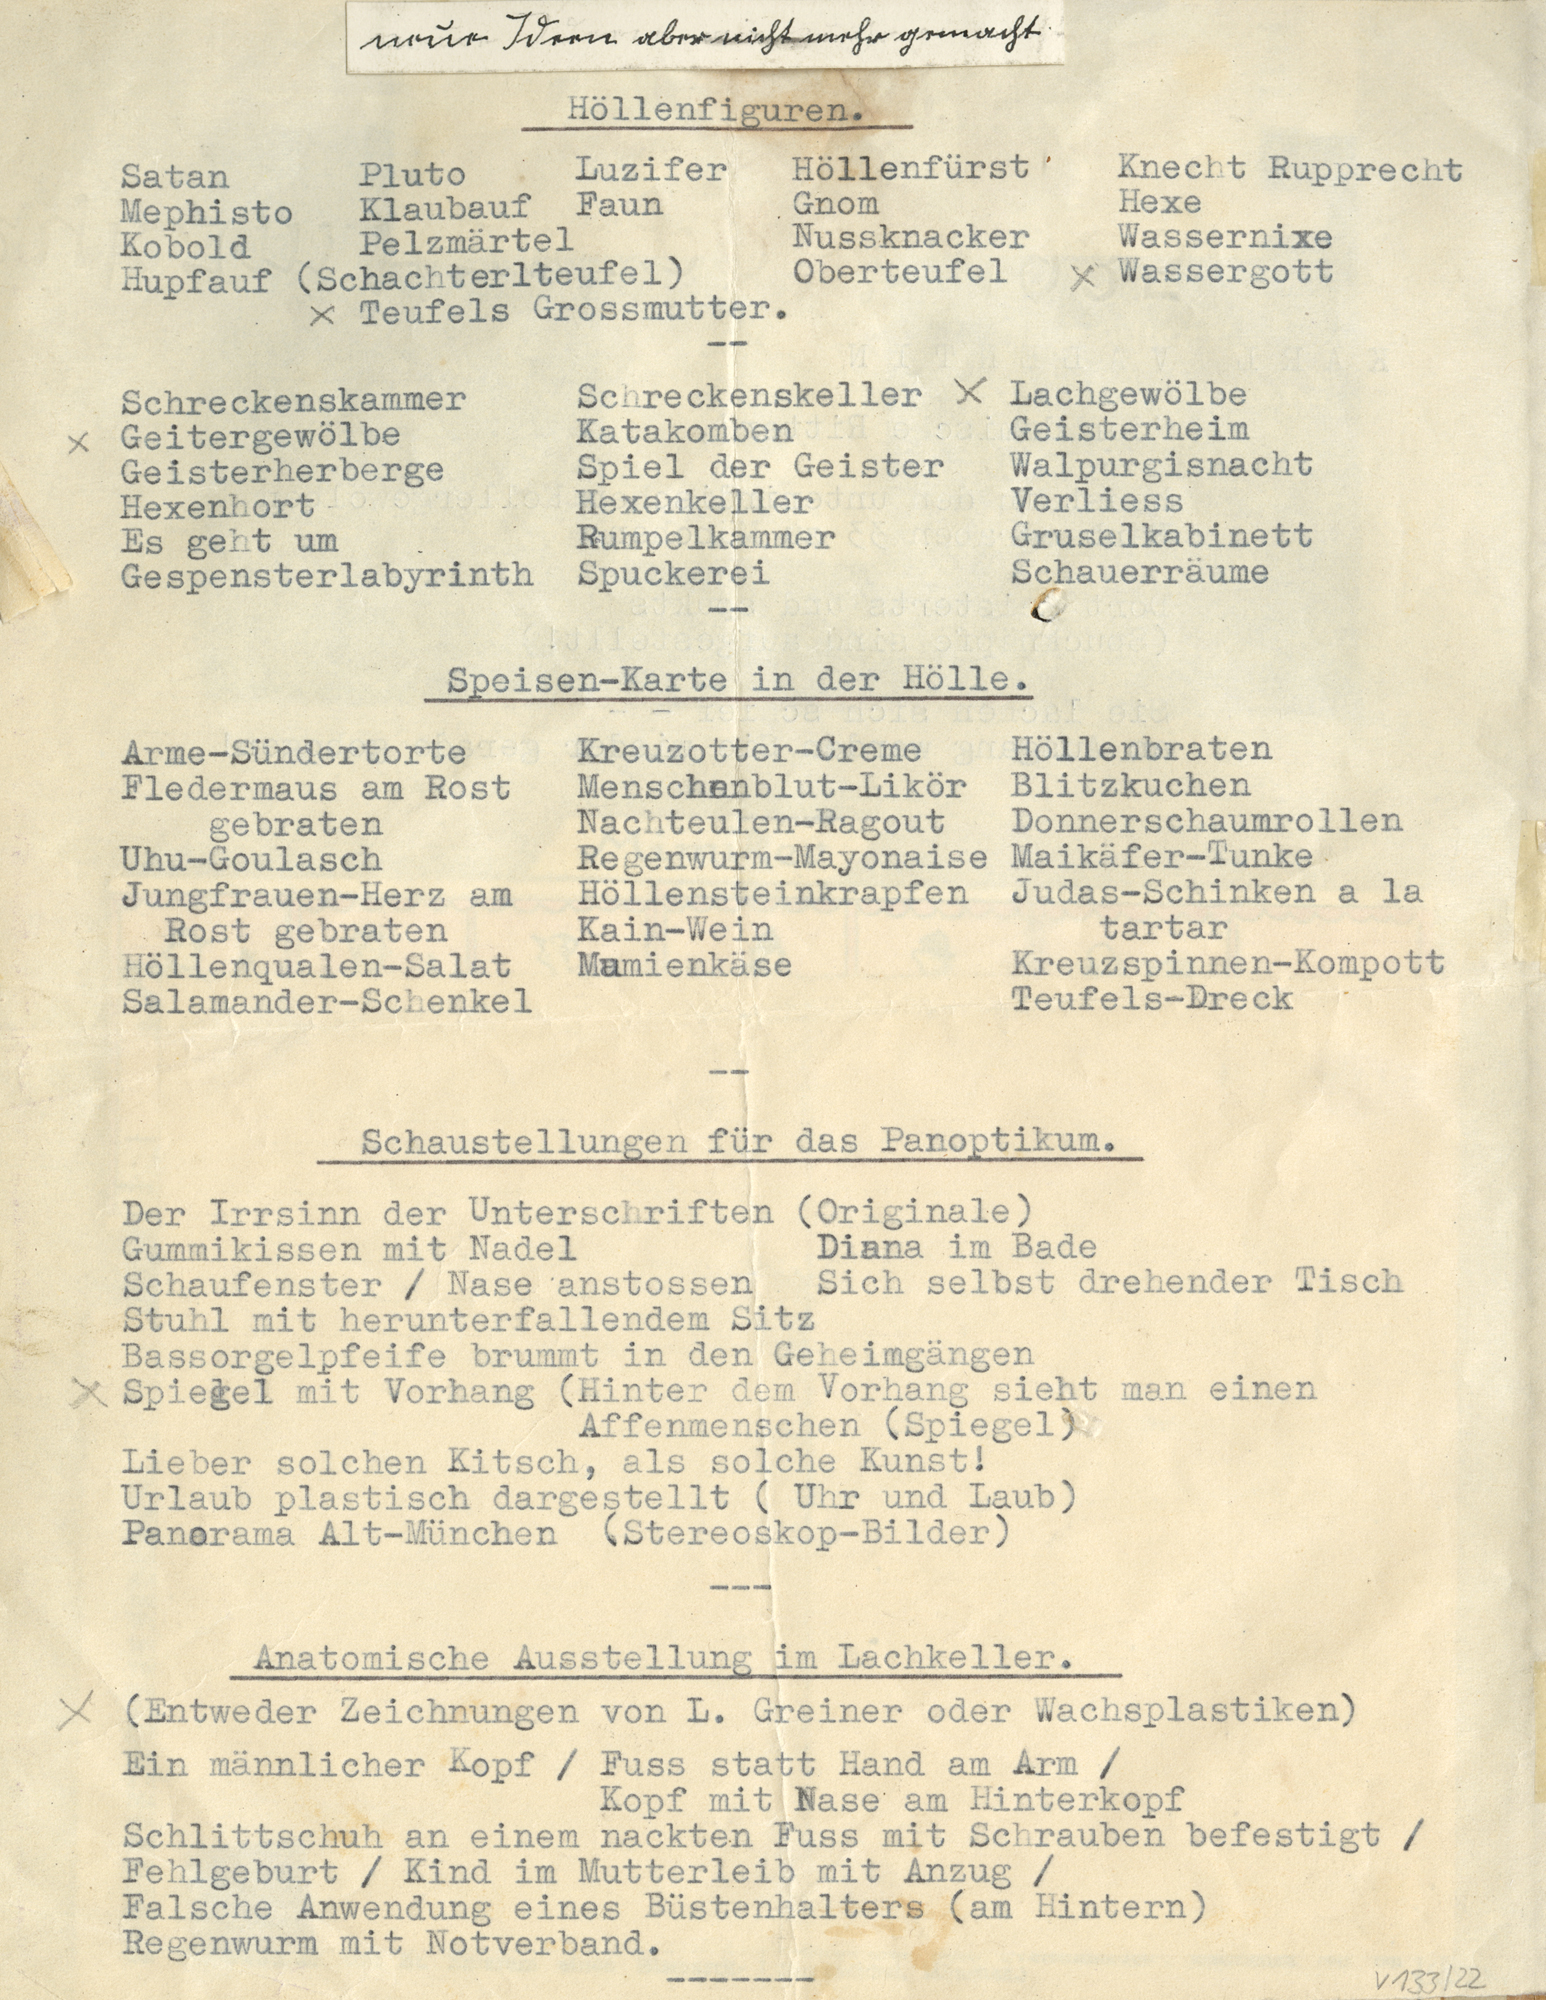 Karl Valentin, Album Greiner, Seite 22, Panoptikum, weitere Ideen, nicht gemacht, um 1950